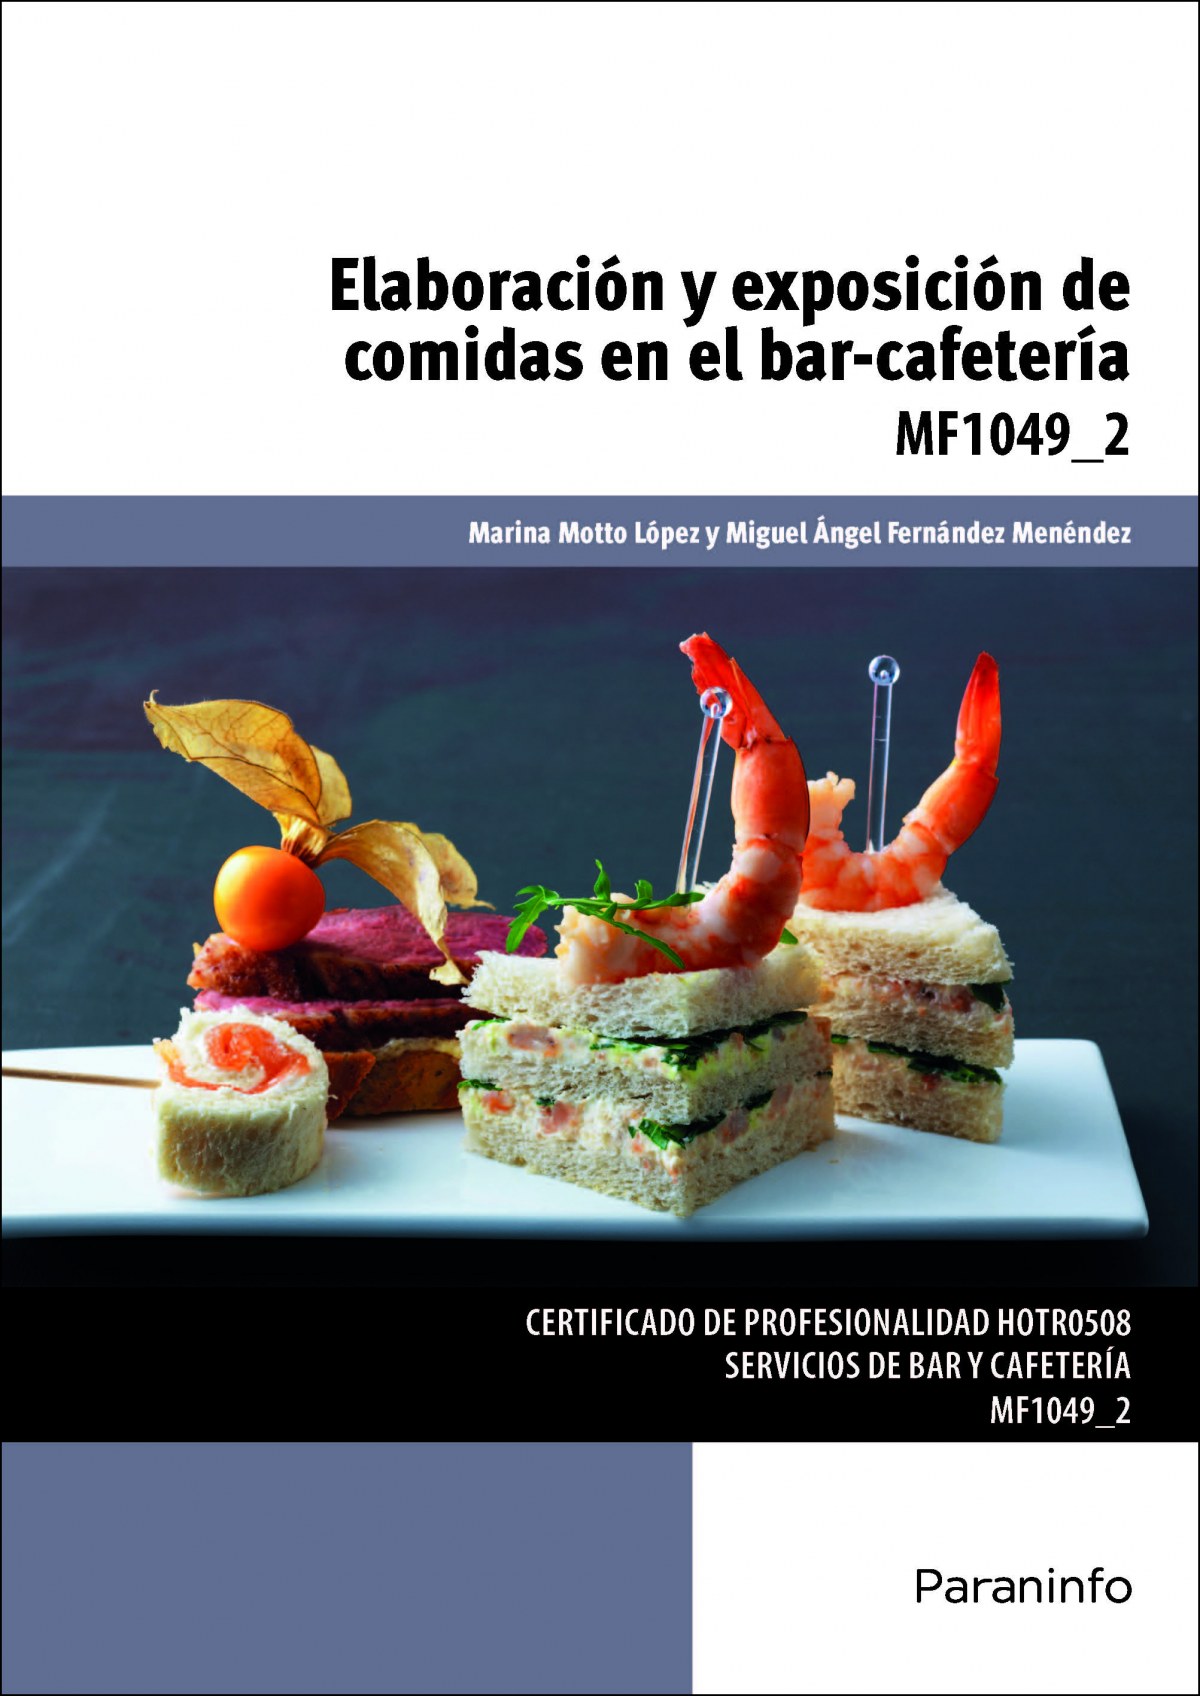 ElaboraciÓn y exposiciÓn de comidas en el bar-cafeterÍa - Motto López, Marina/Fernández, Miguel Ángel